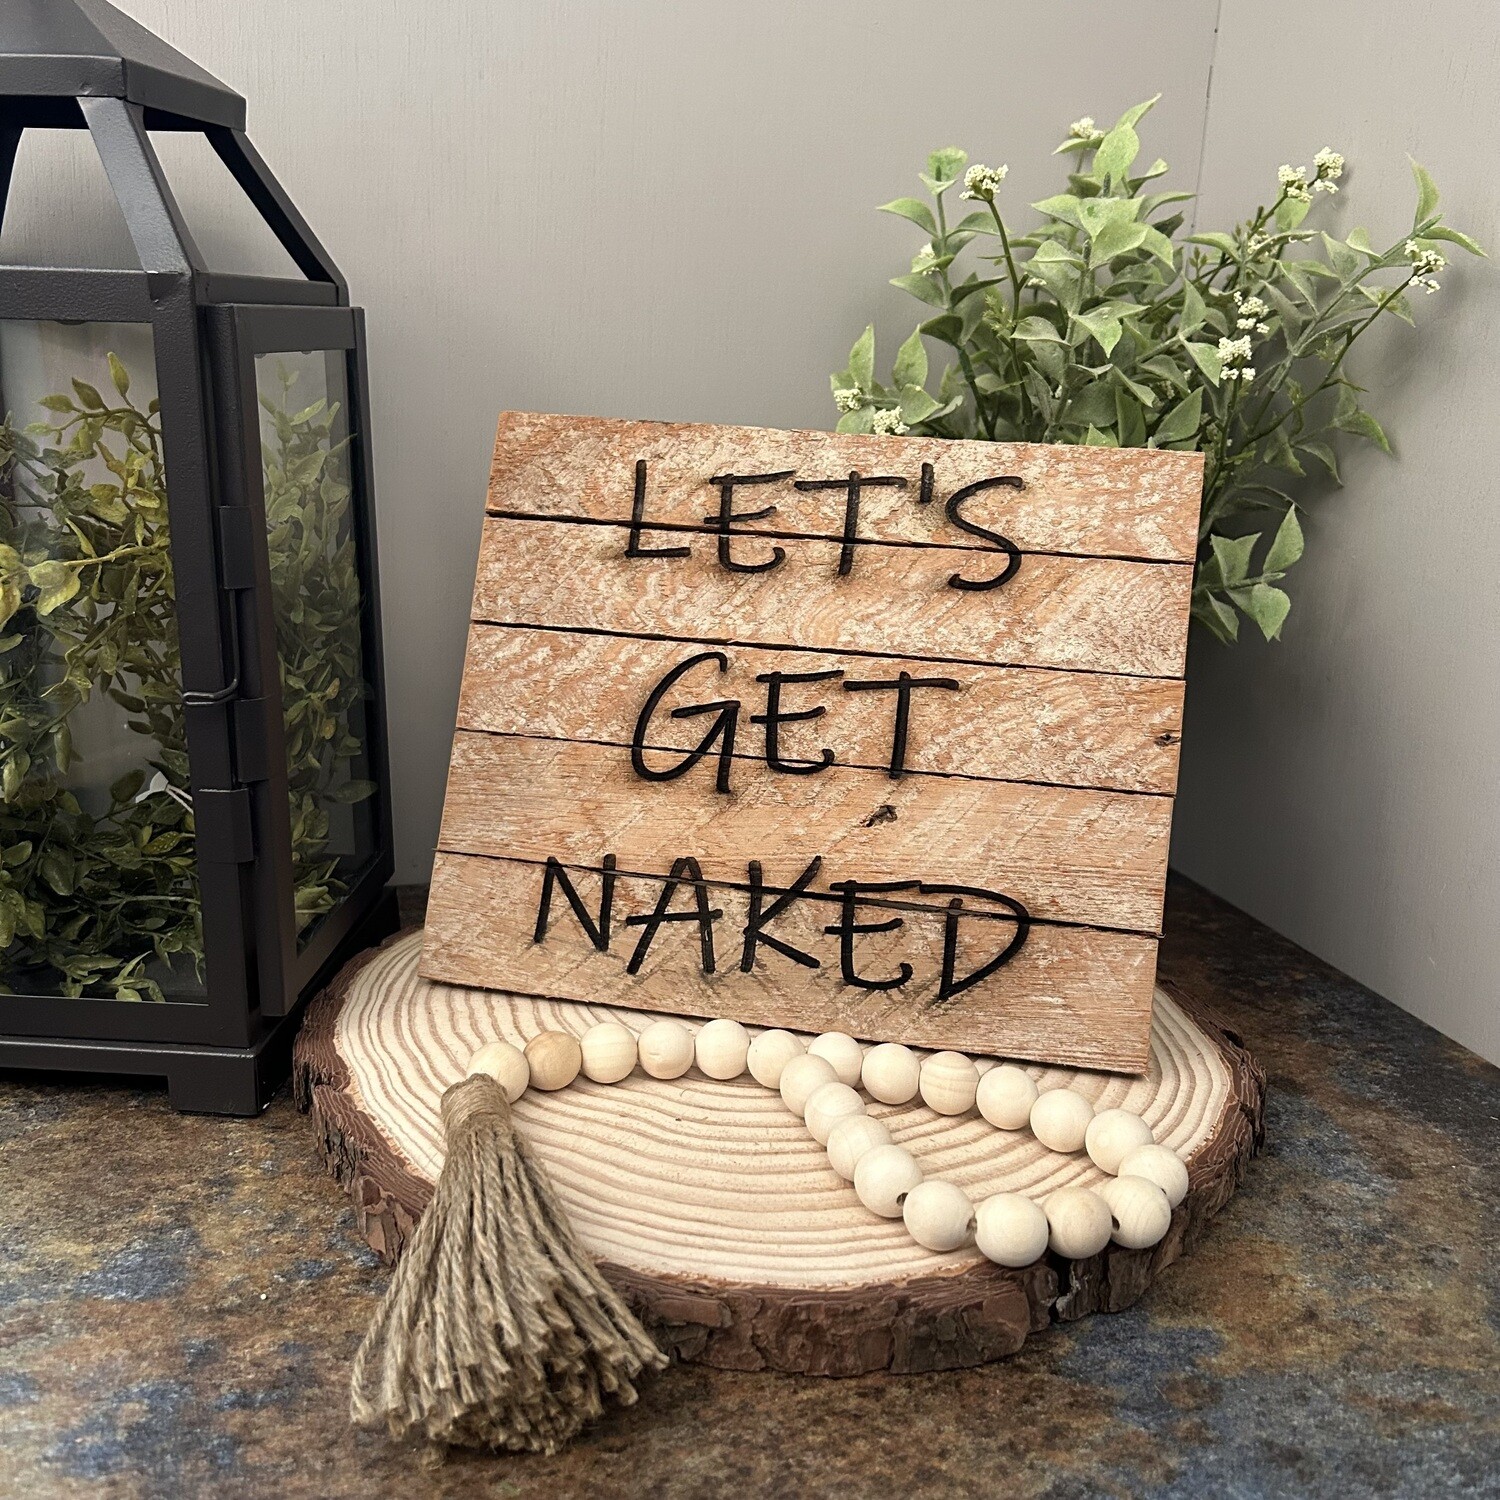 Lets Get Naked - Lath sign